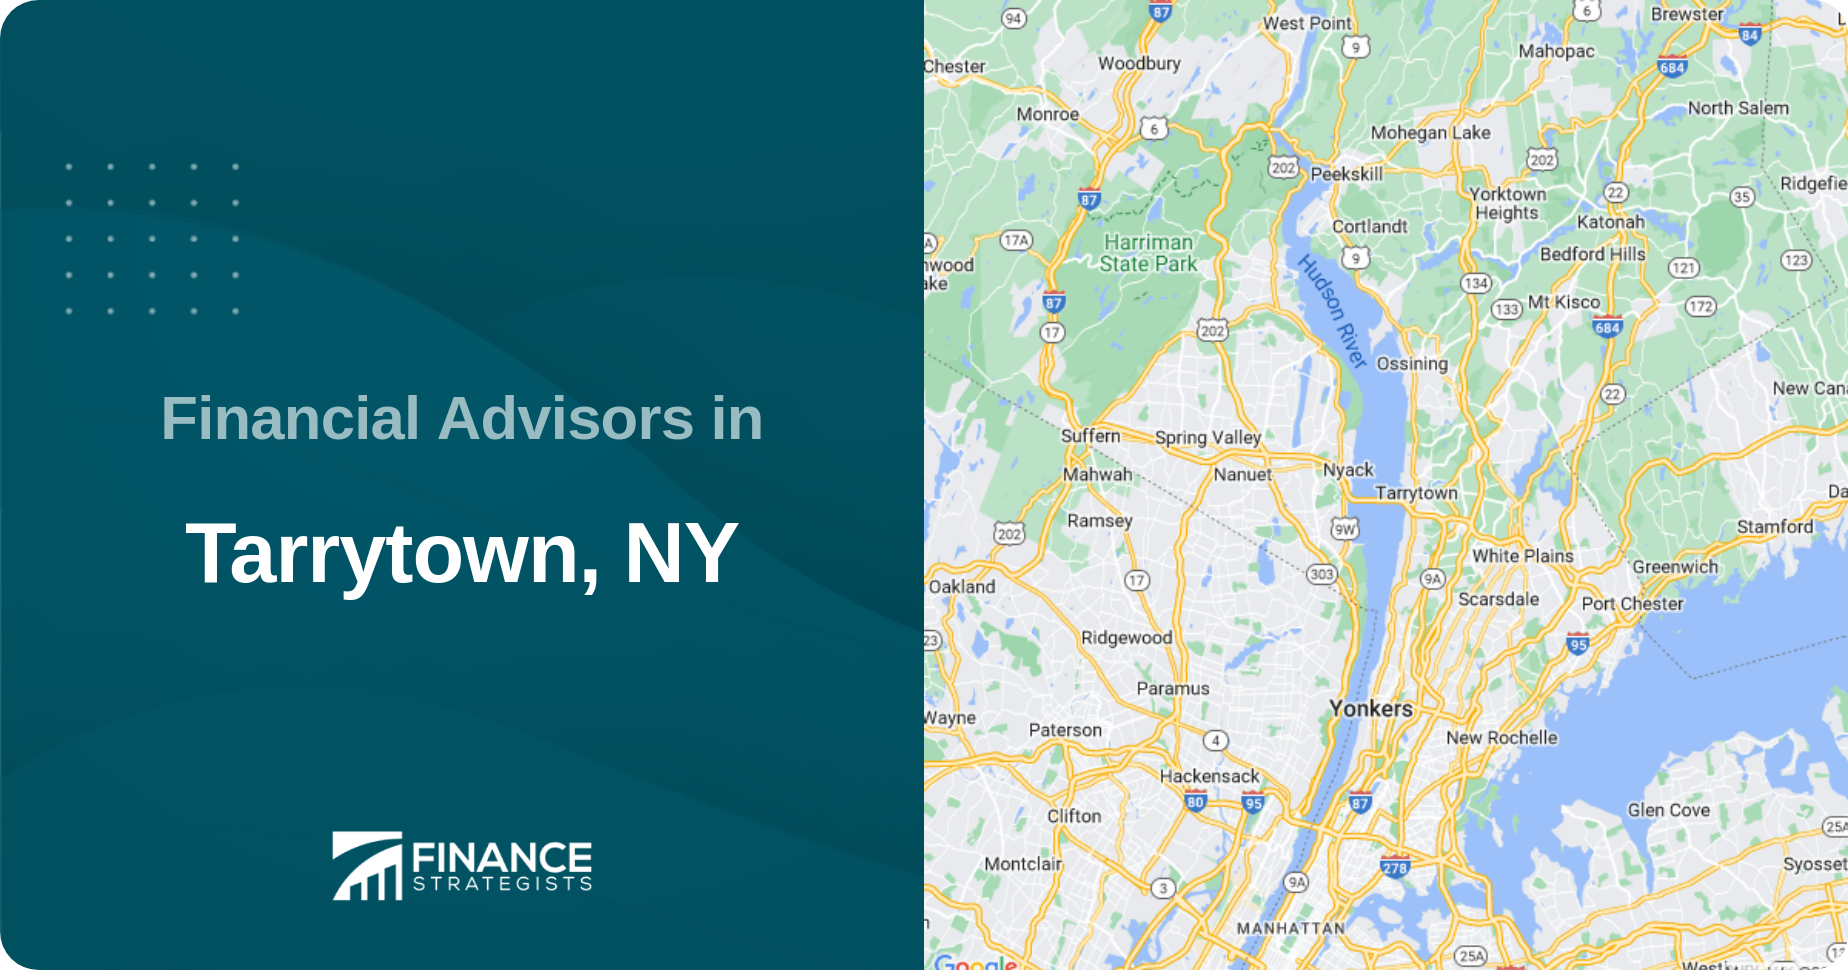 Financial Advisors in Tarrytown, NY